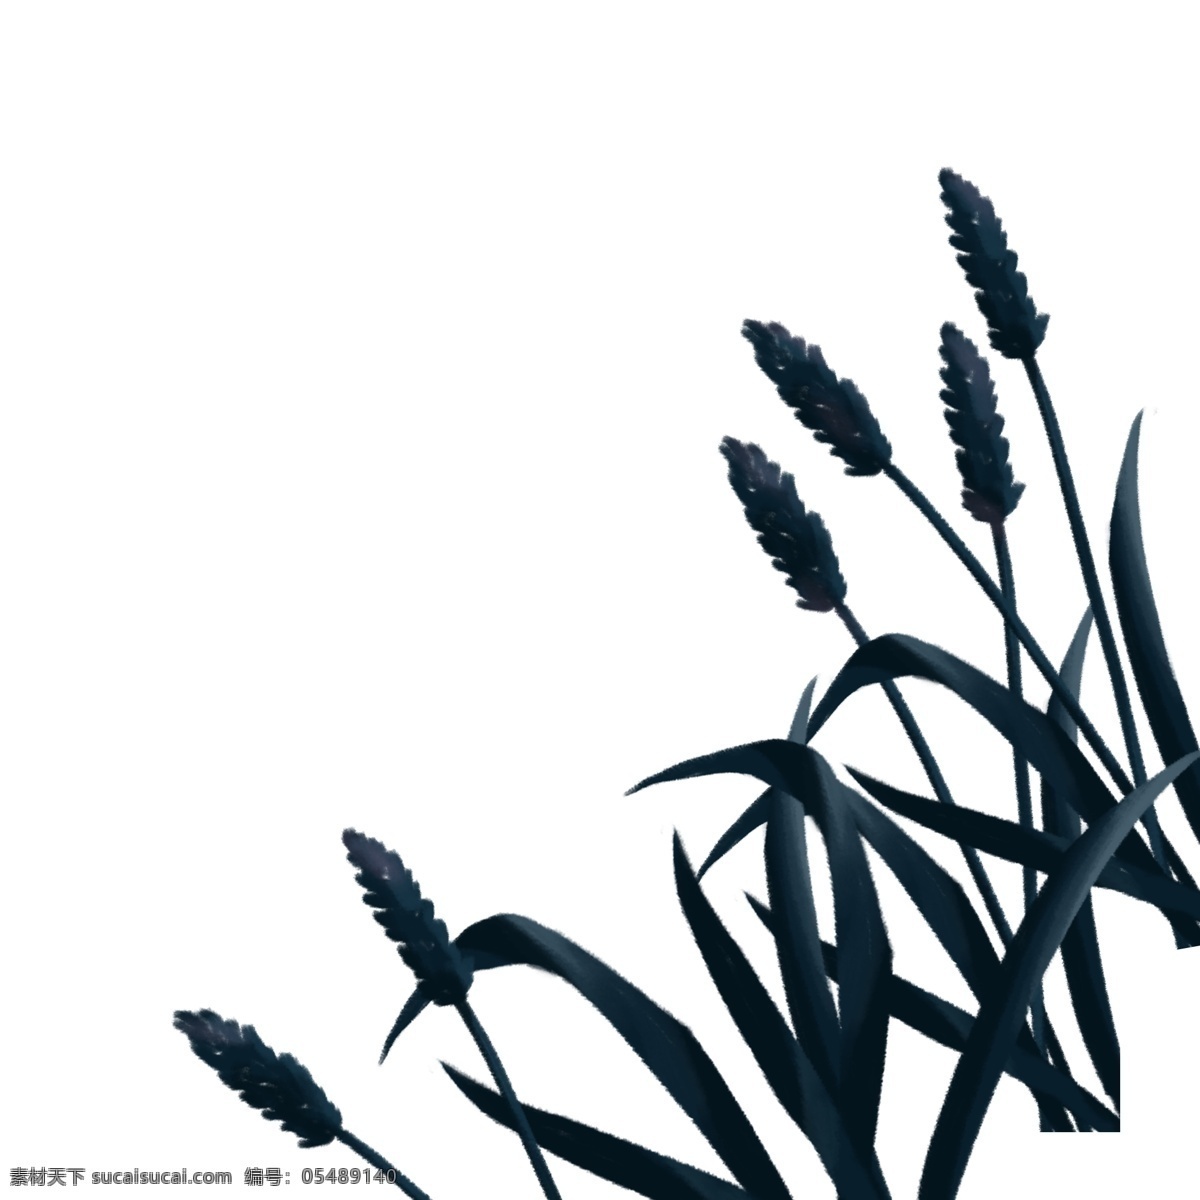 黑色 植 叶 免 抠 图 草地 黑色叶子 生态植物 卡通叶子 绿色枝叶 新鲜的植物 长长的枝叶 植物 枝叶 免抠图